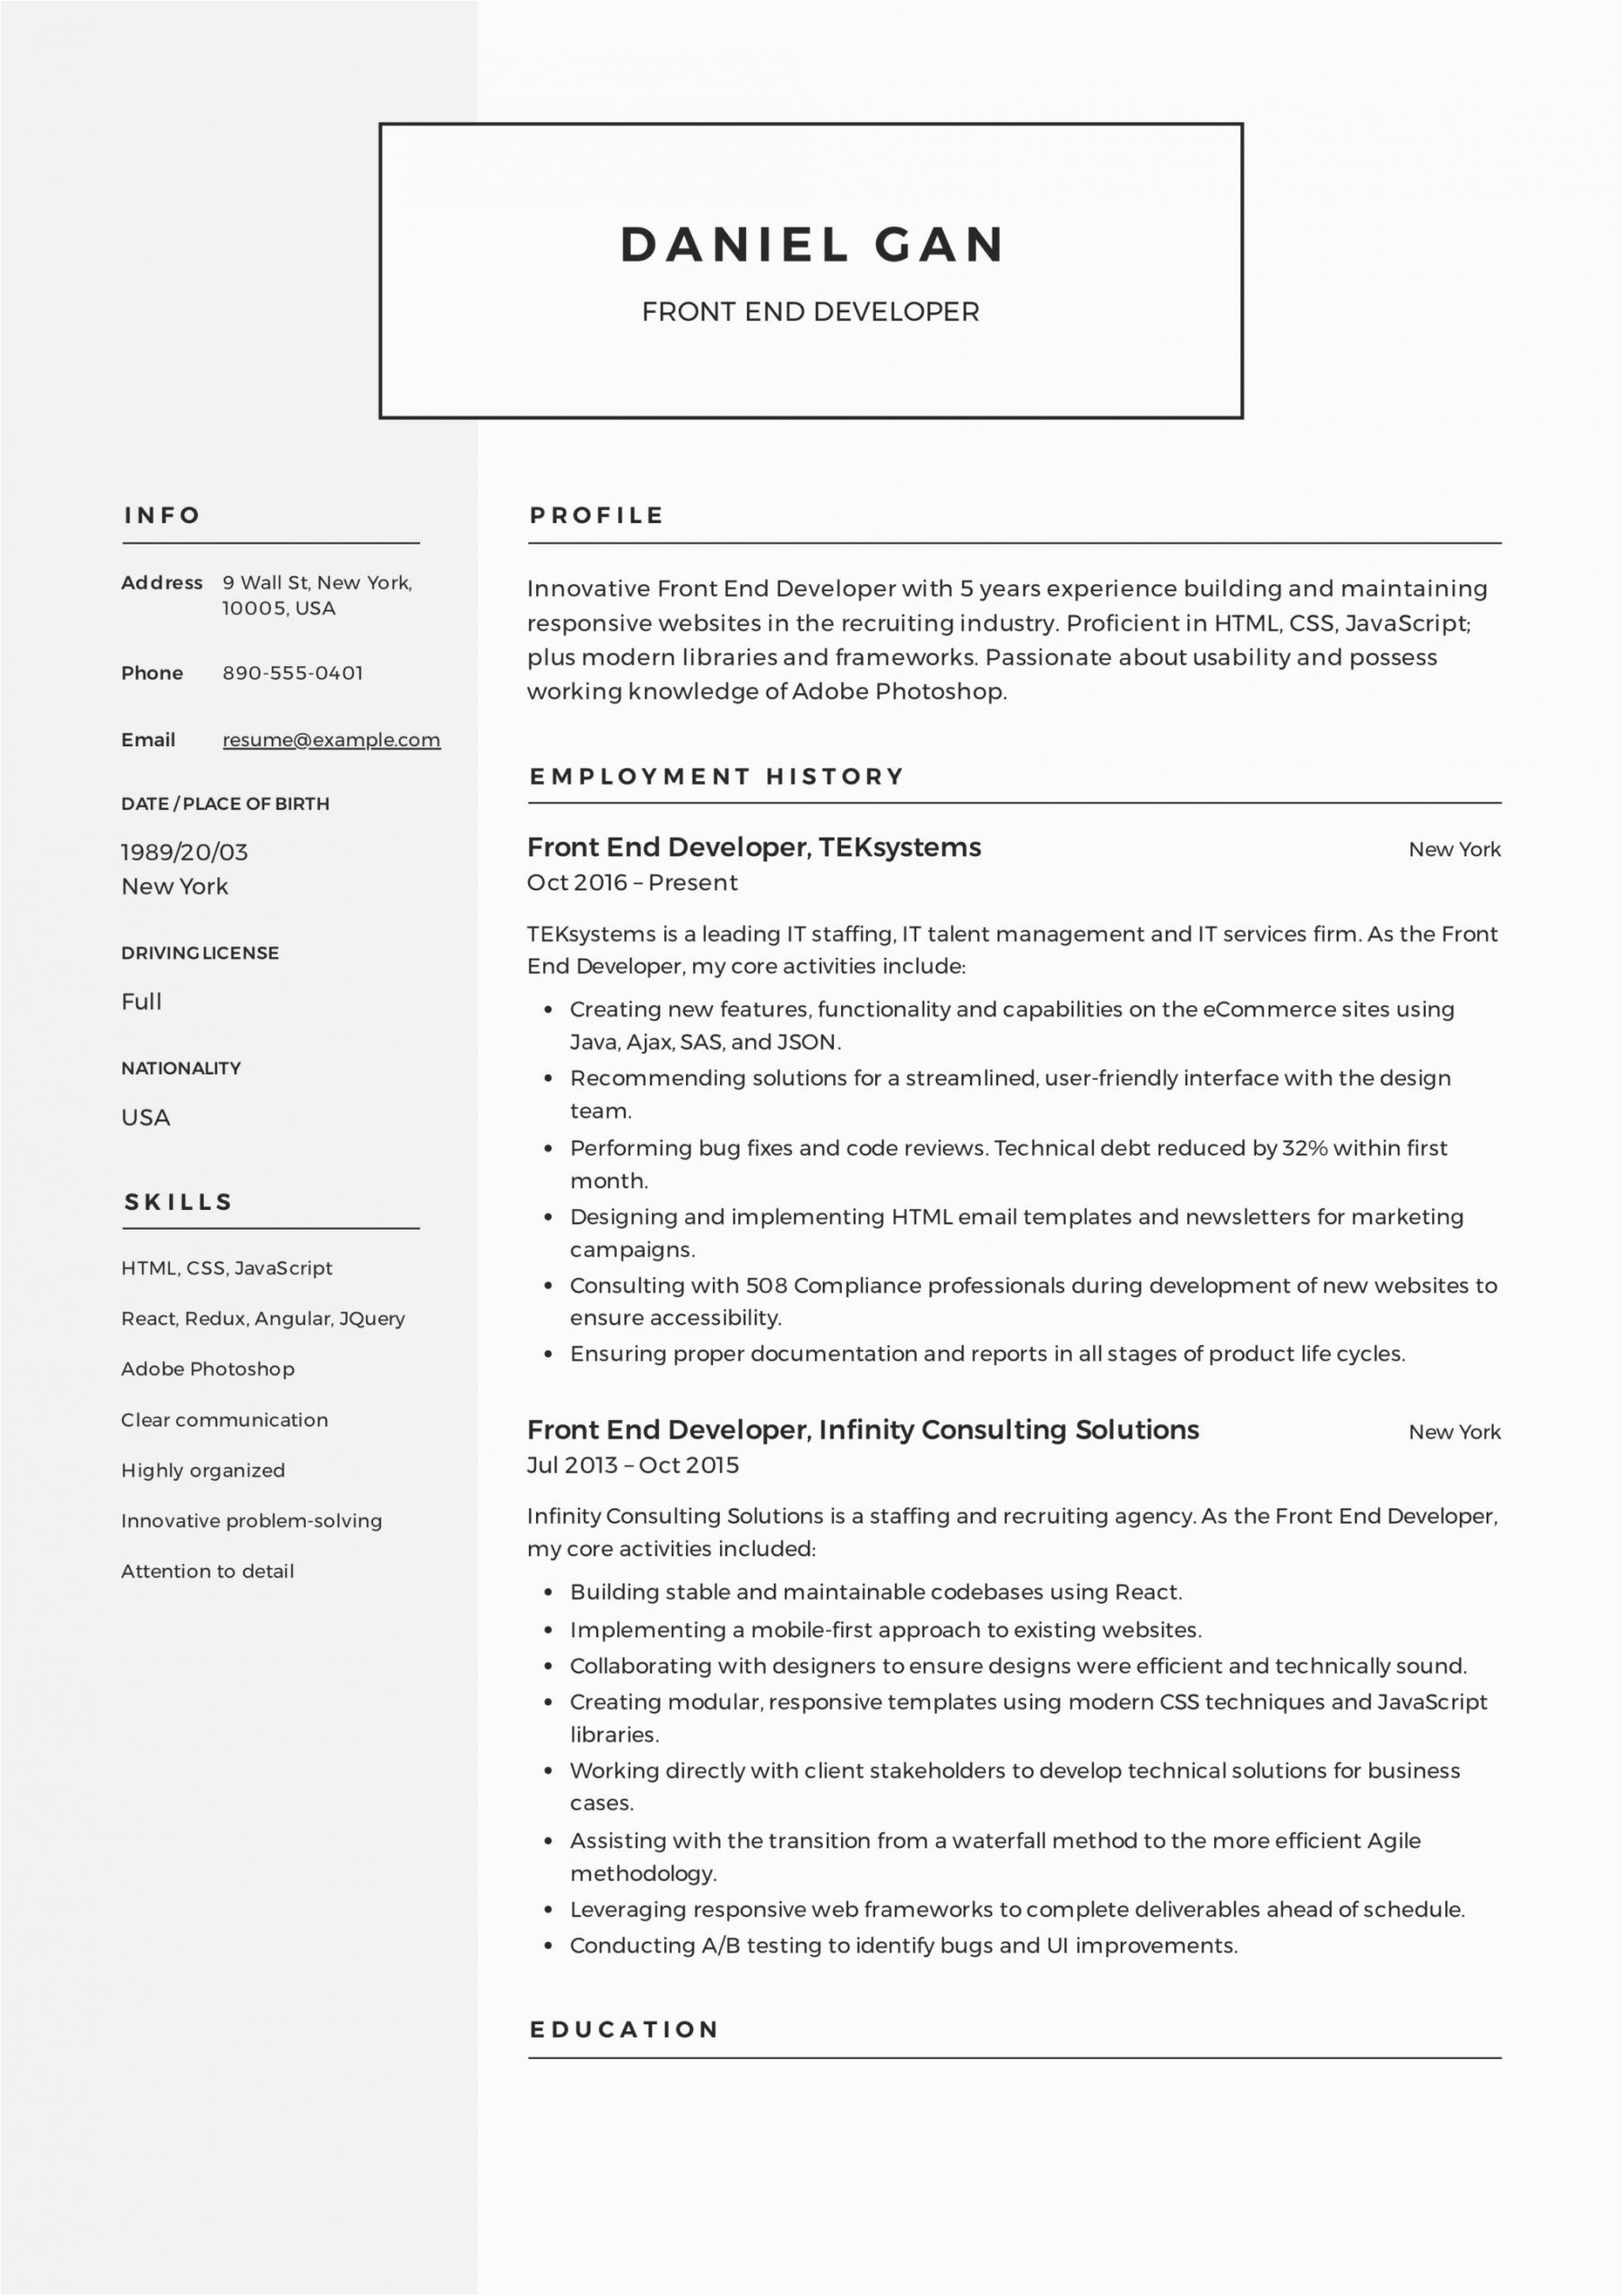 Sample Resume for Front End Developer Front End Developer Resume Guide & Sample – Resumeviking